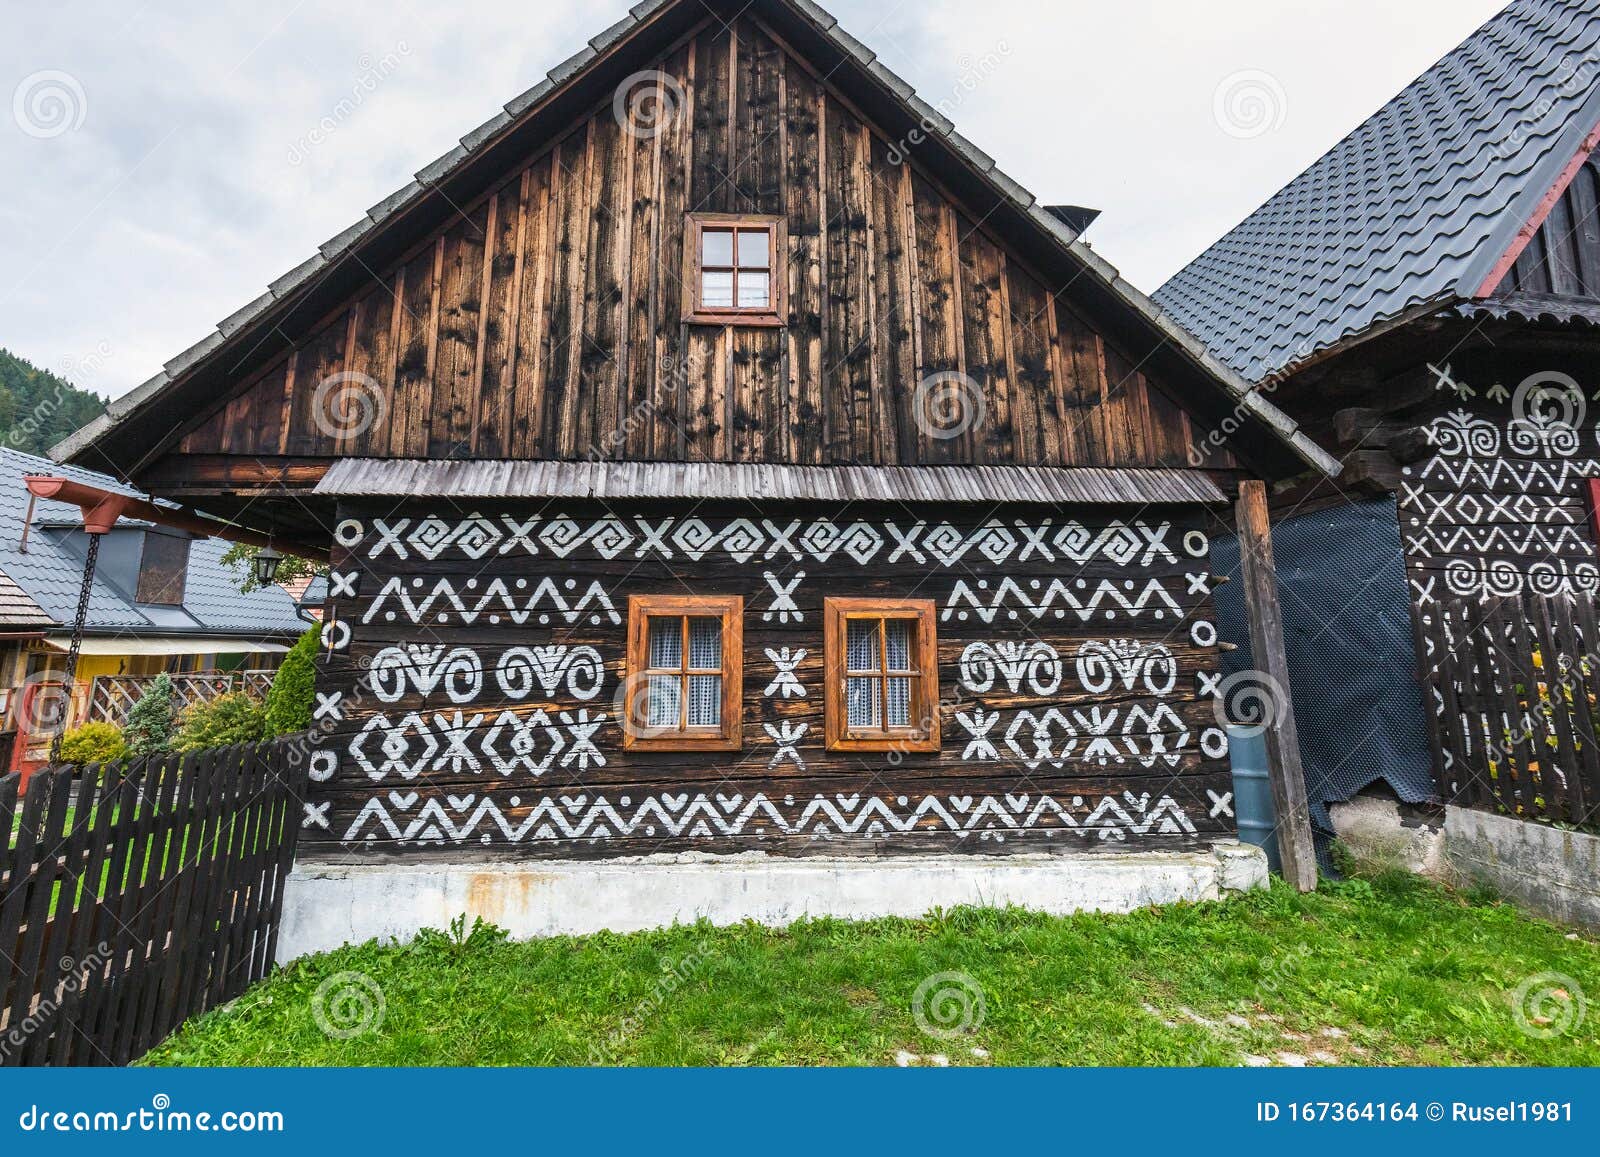 Cicmany Village Slovakia Stock Photo Image Of Farmhouse 167364164